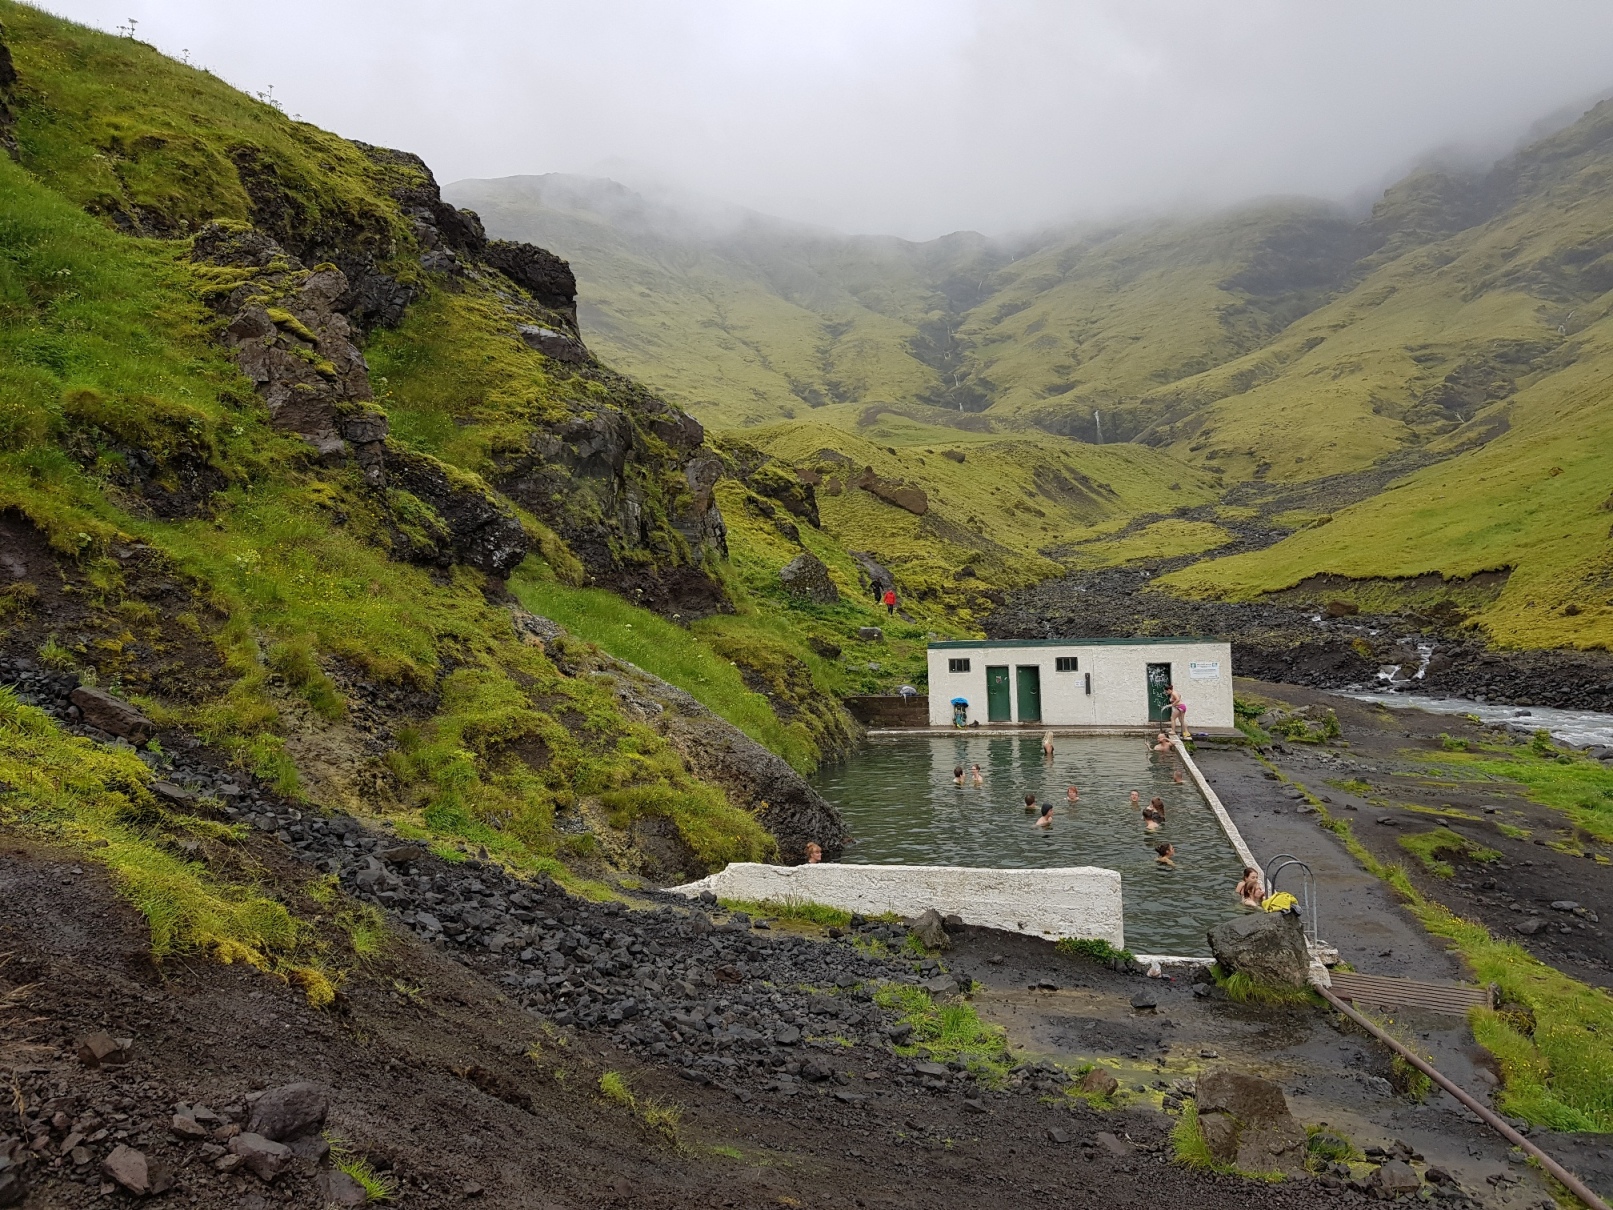 Island Berge mit Moos sind wolkenverhangen, Schwimmbecken